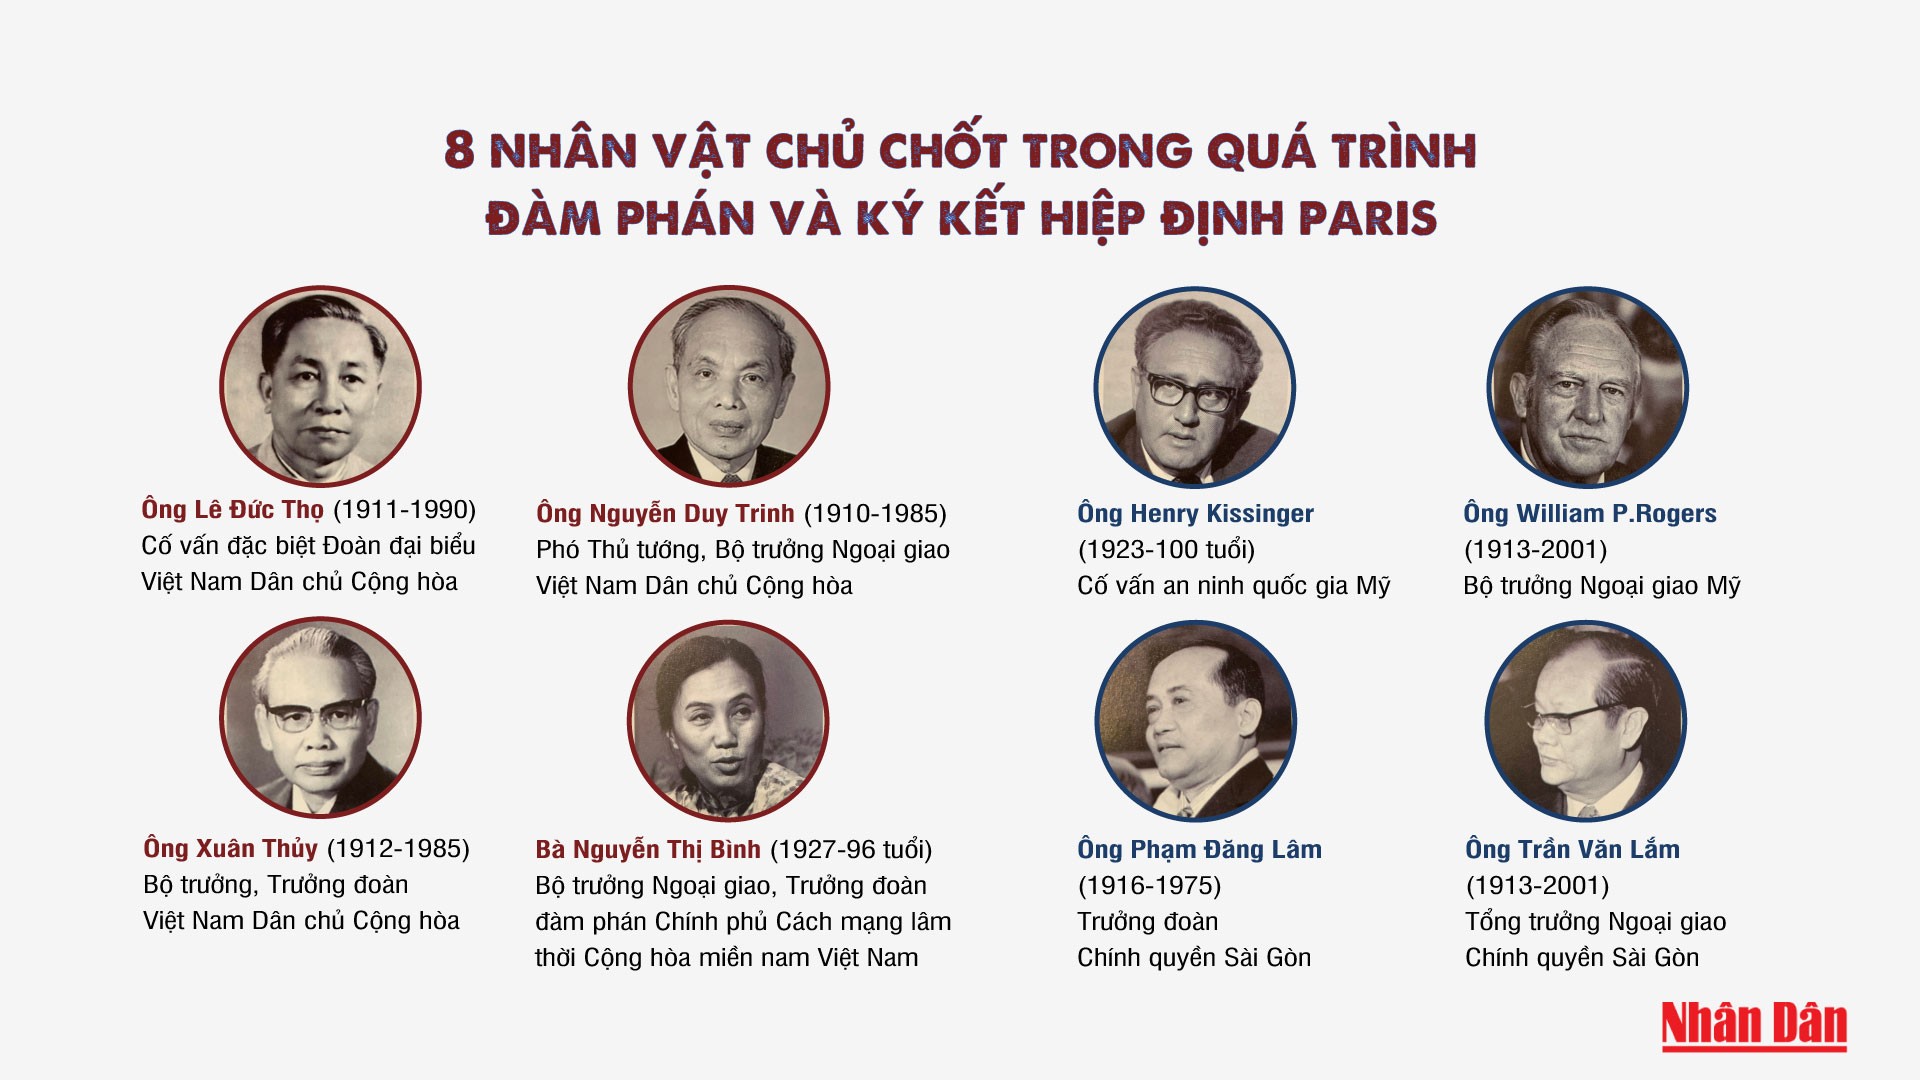 [Infographic] 8 nhân vật chủ chốt trong quá trình đàm phán và ký kết Hiệp định Paris 1973 ảnh 1